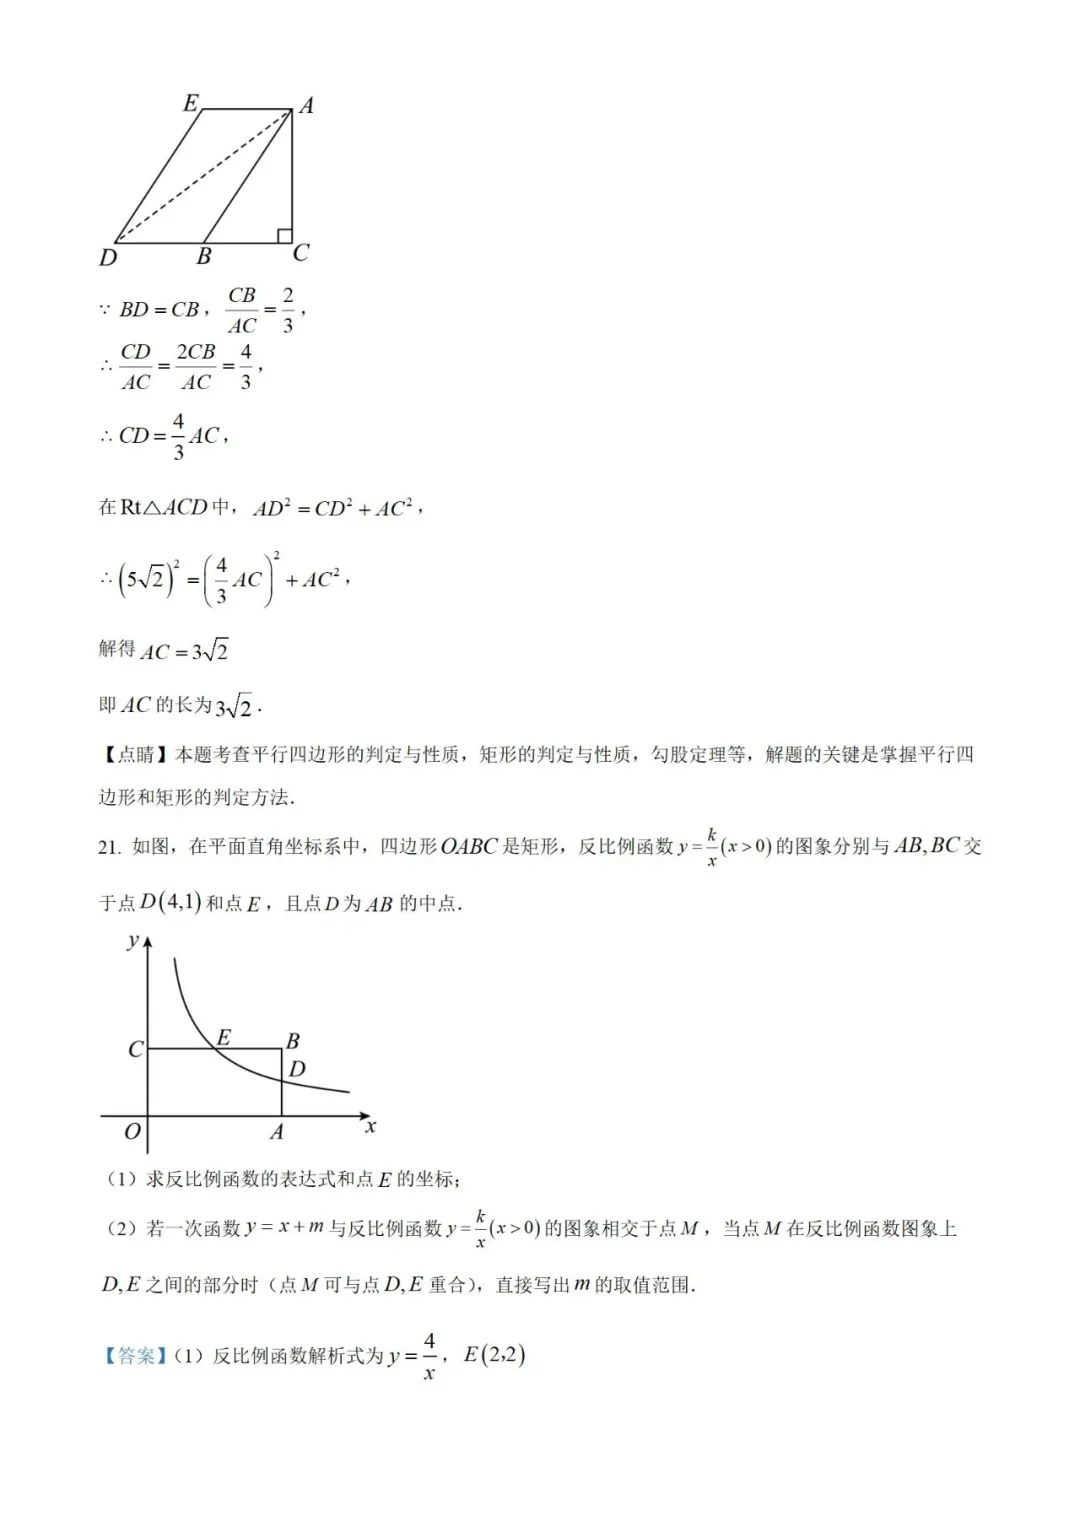 【中考真题】2023年贵州省中考数学真题 (带答案解析) 第24张